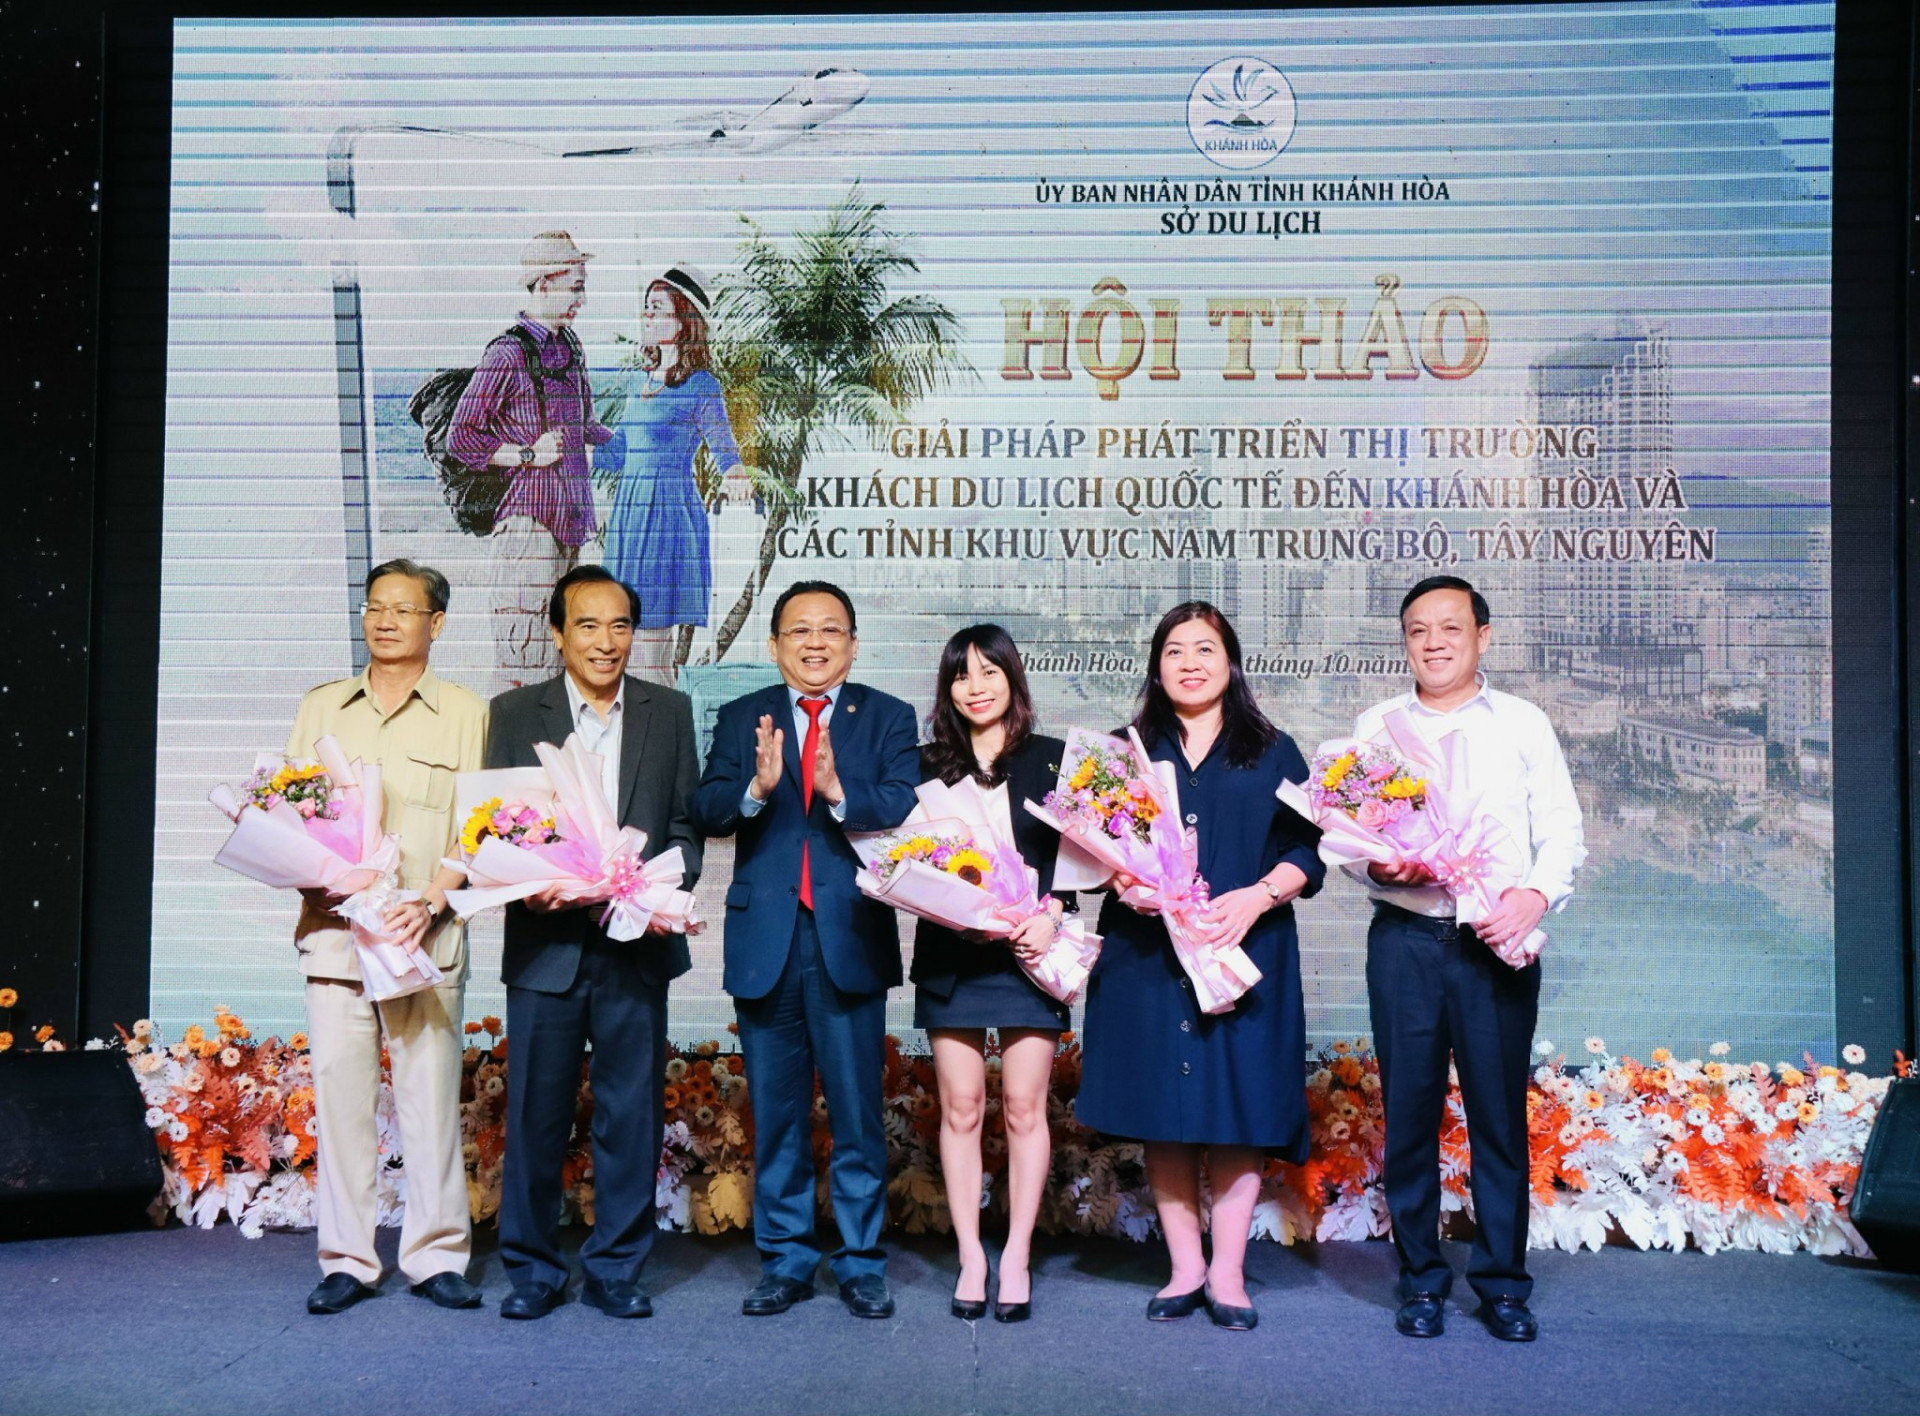 Phó Chủ tịch Thường trực UBND tỉnh Khánh Hòa tặng hoa cho các lãnh đạo Hiệp hội Du lịch các tỉnh khu vưc Nam Trung Bộ và Tây Nguyên